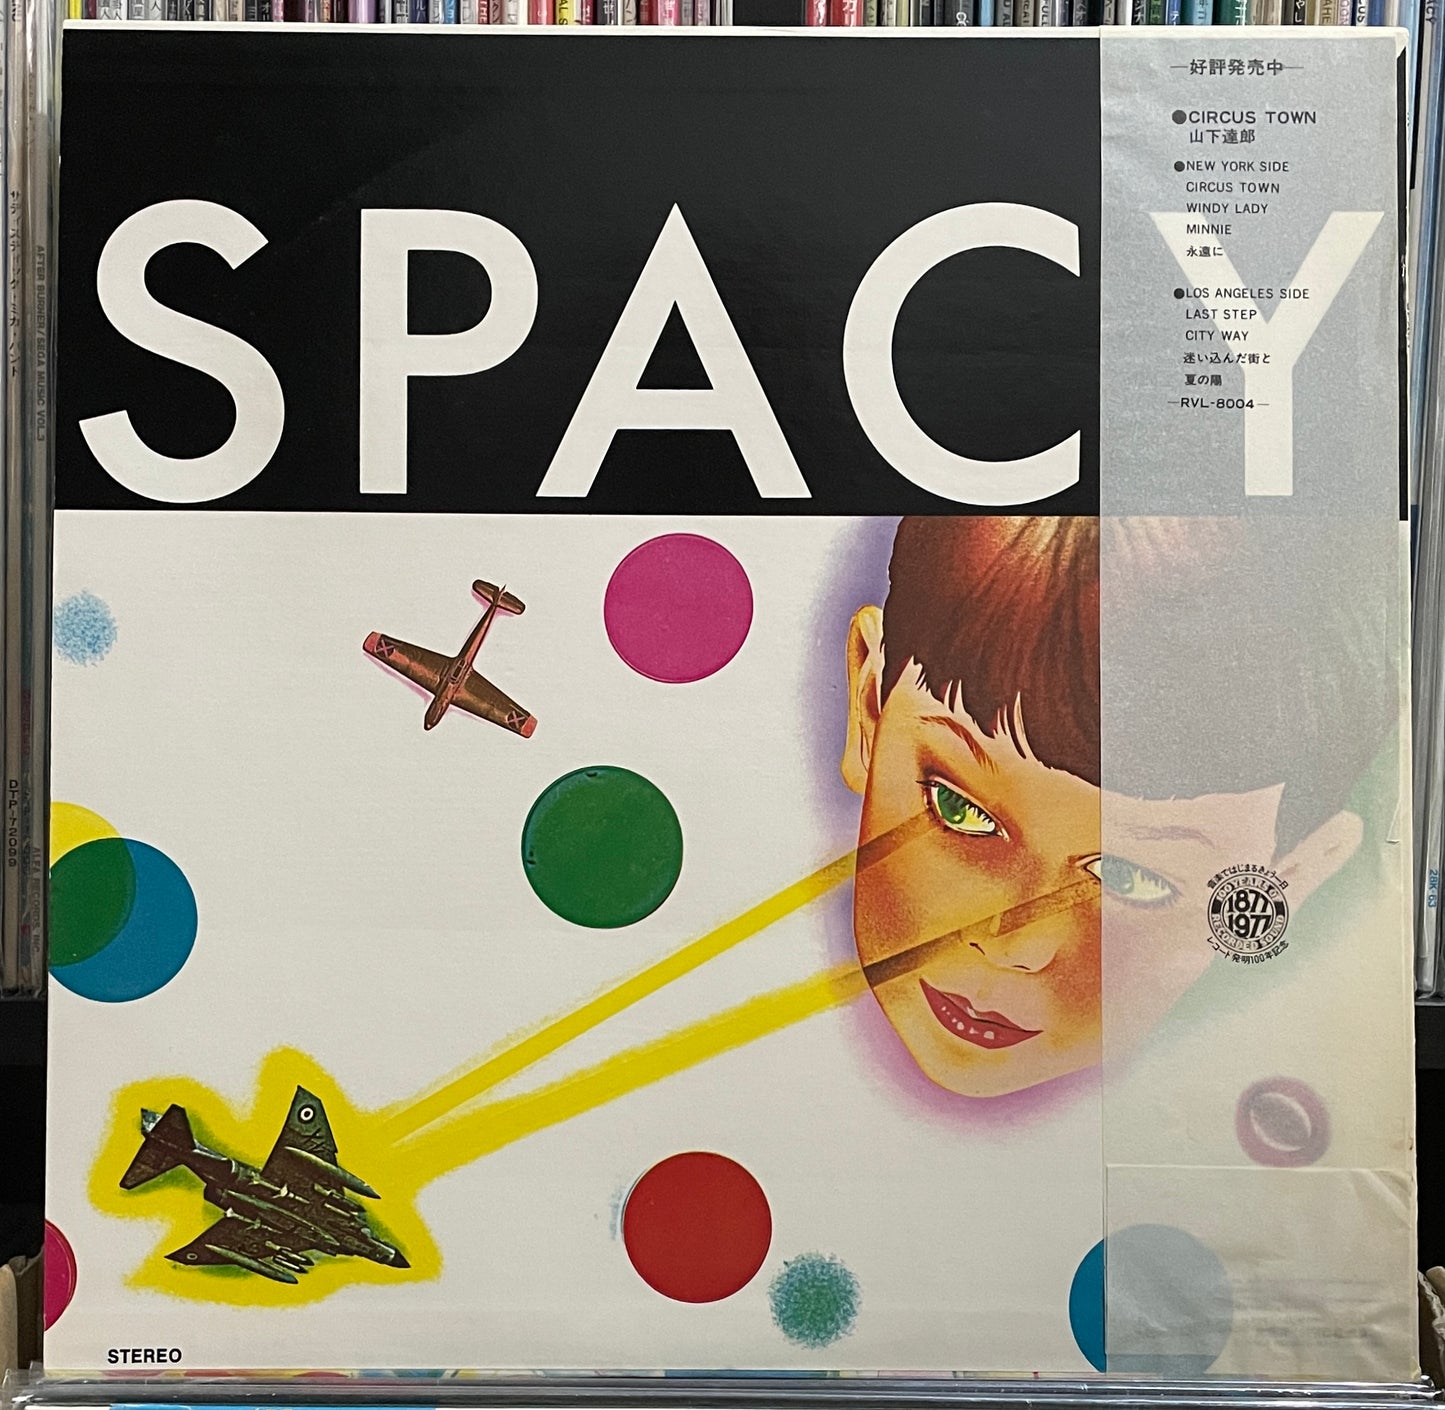 Tatsuro Yamashita “Spacy” (1977)